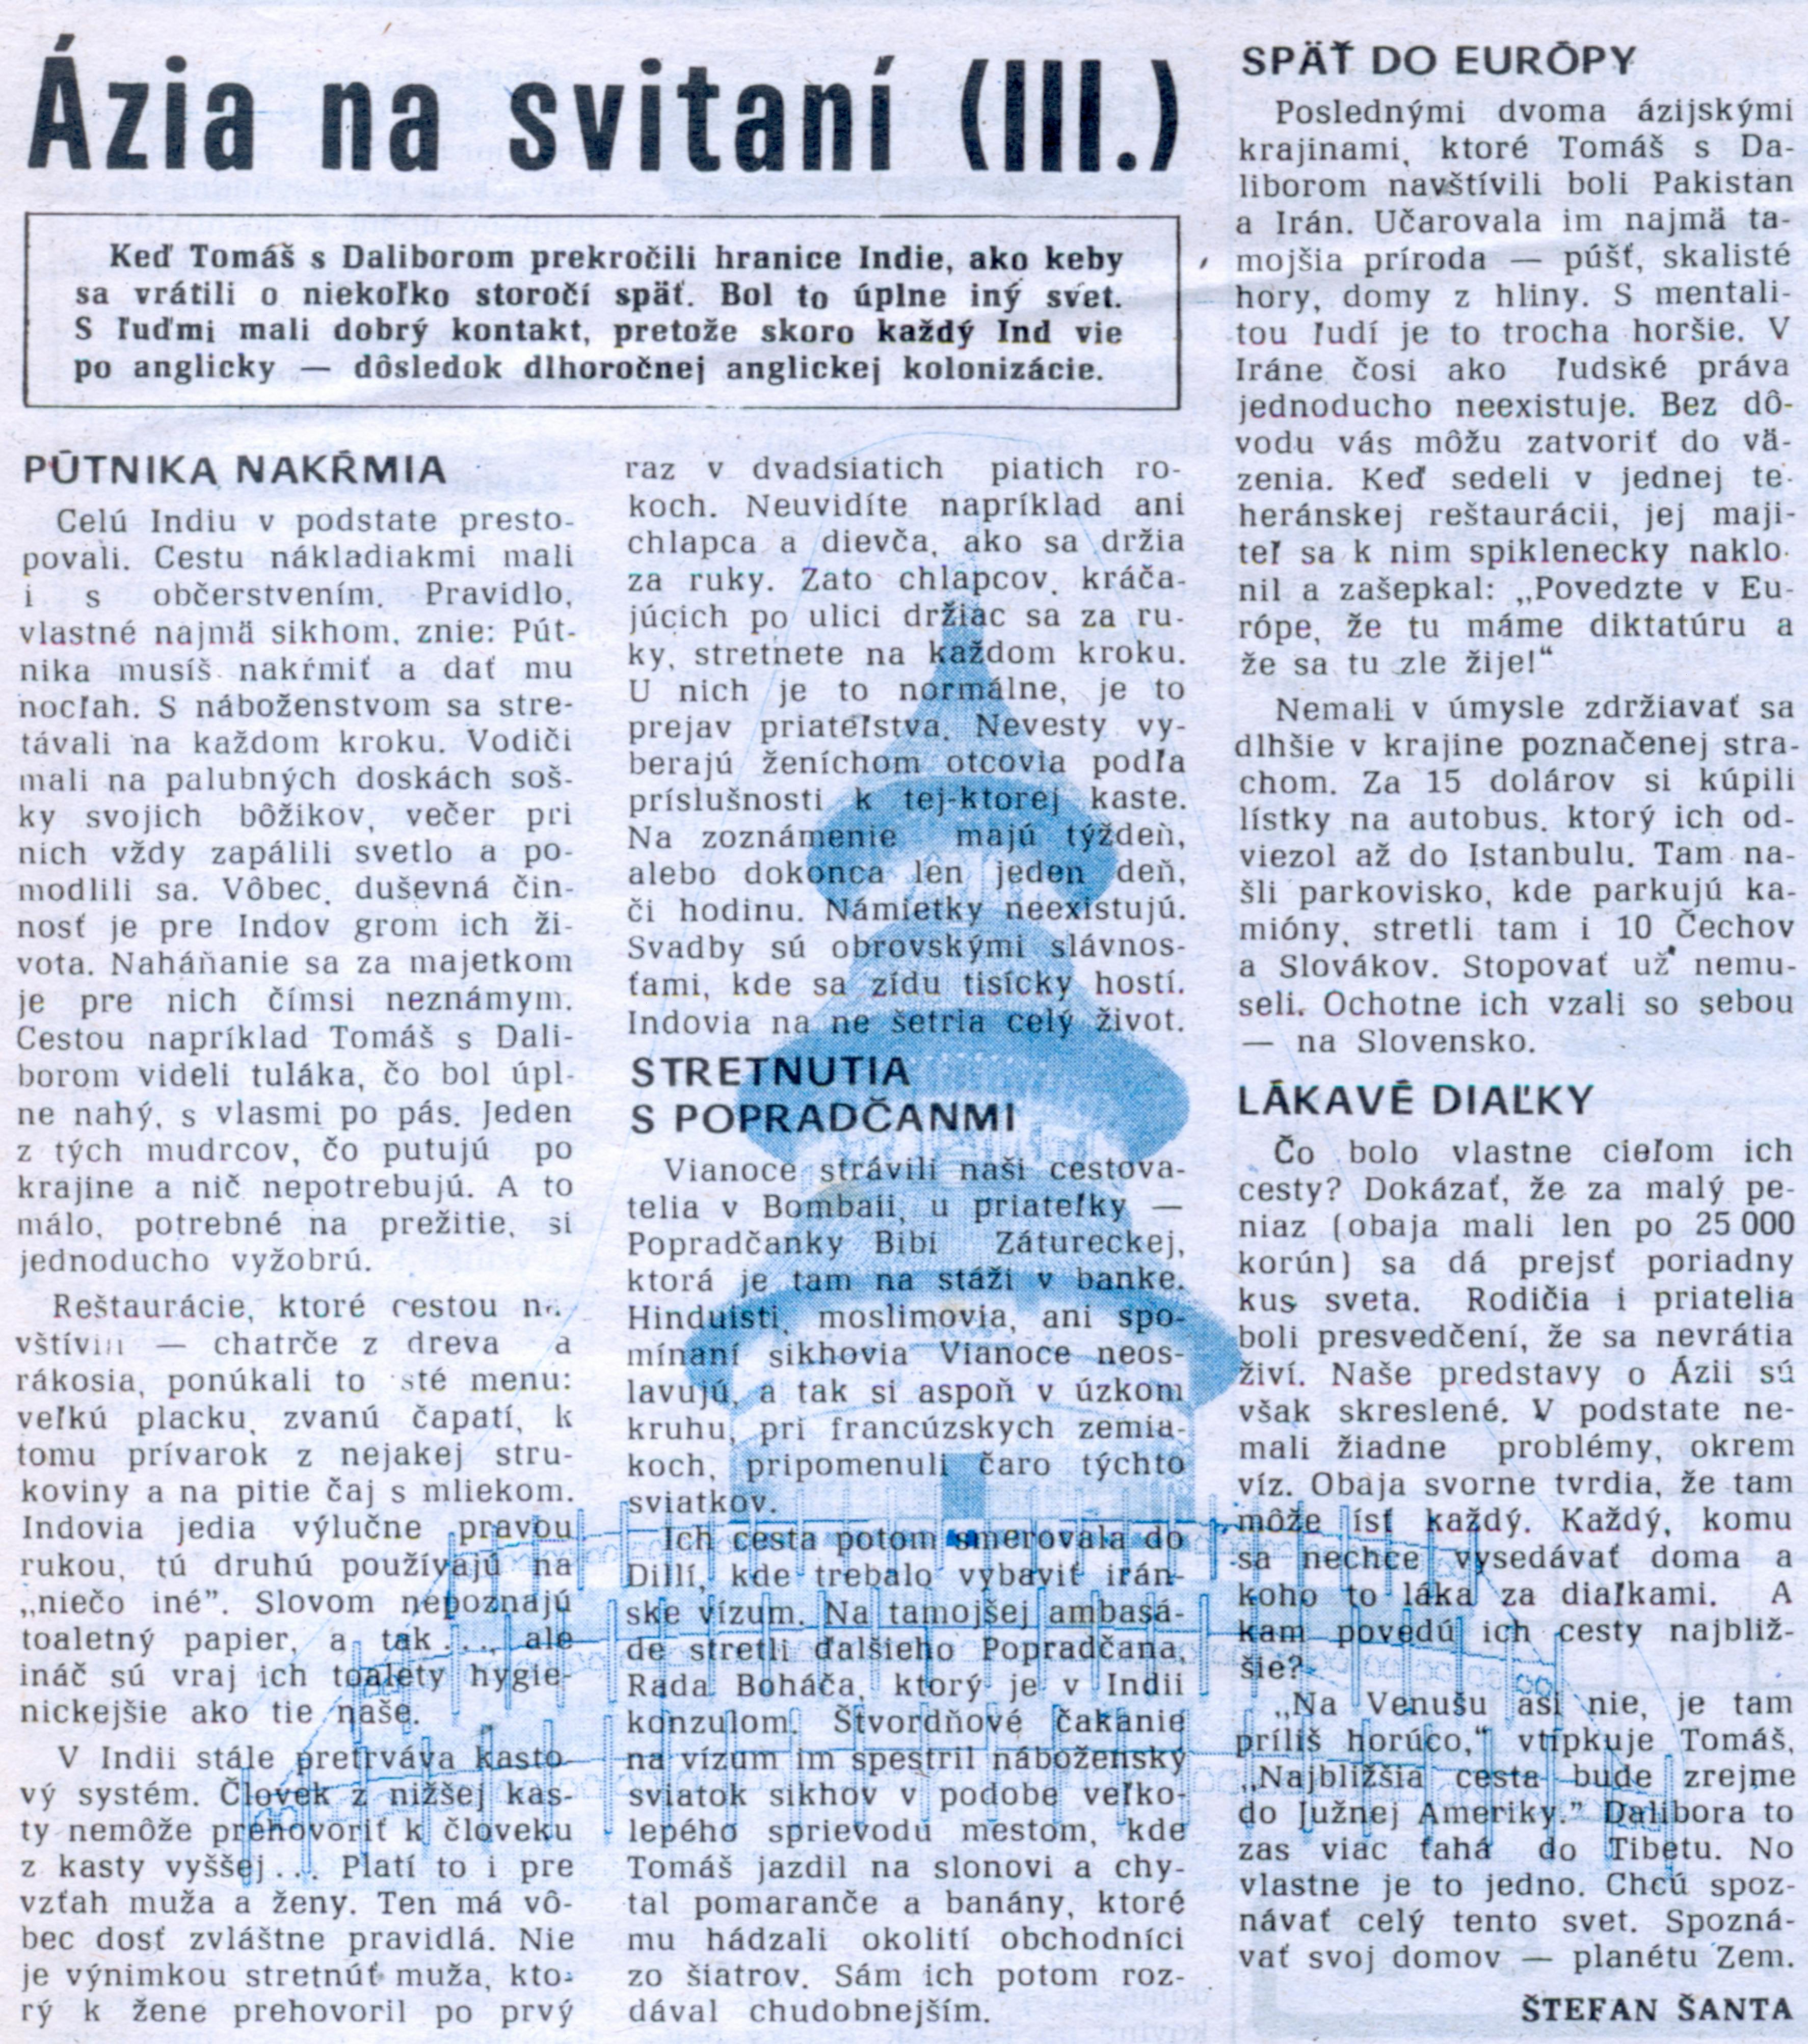 Poprad, č. 13, 17. februára 1995